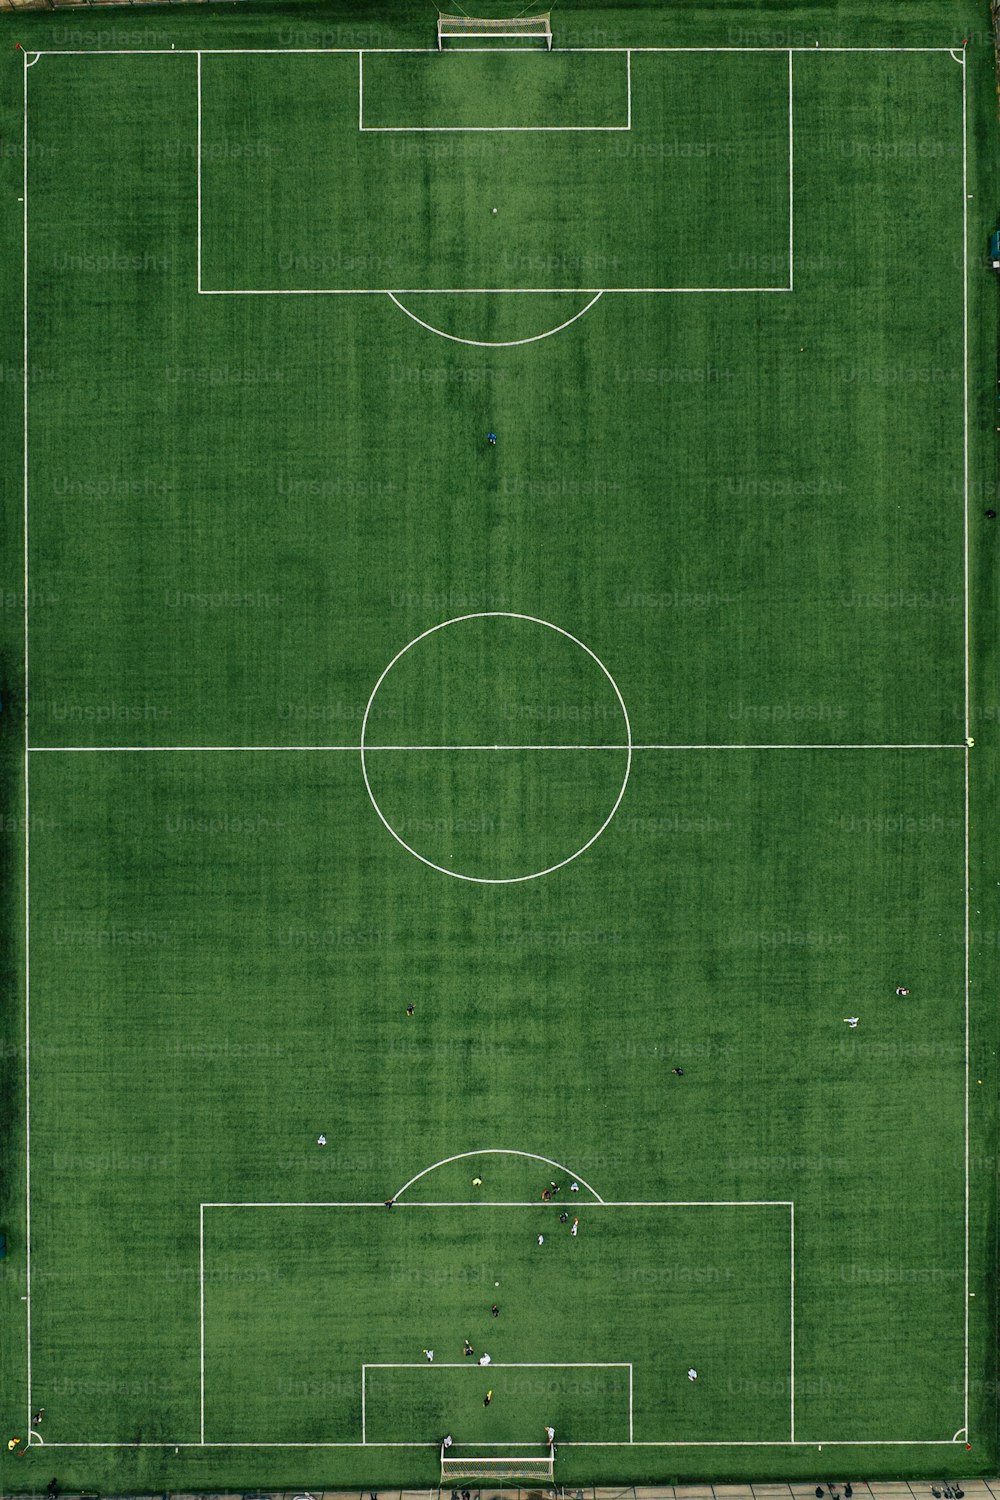 una veduta aerea di un campo da calcio dall'alto